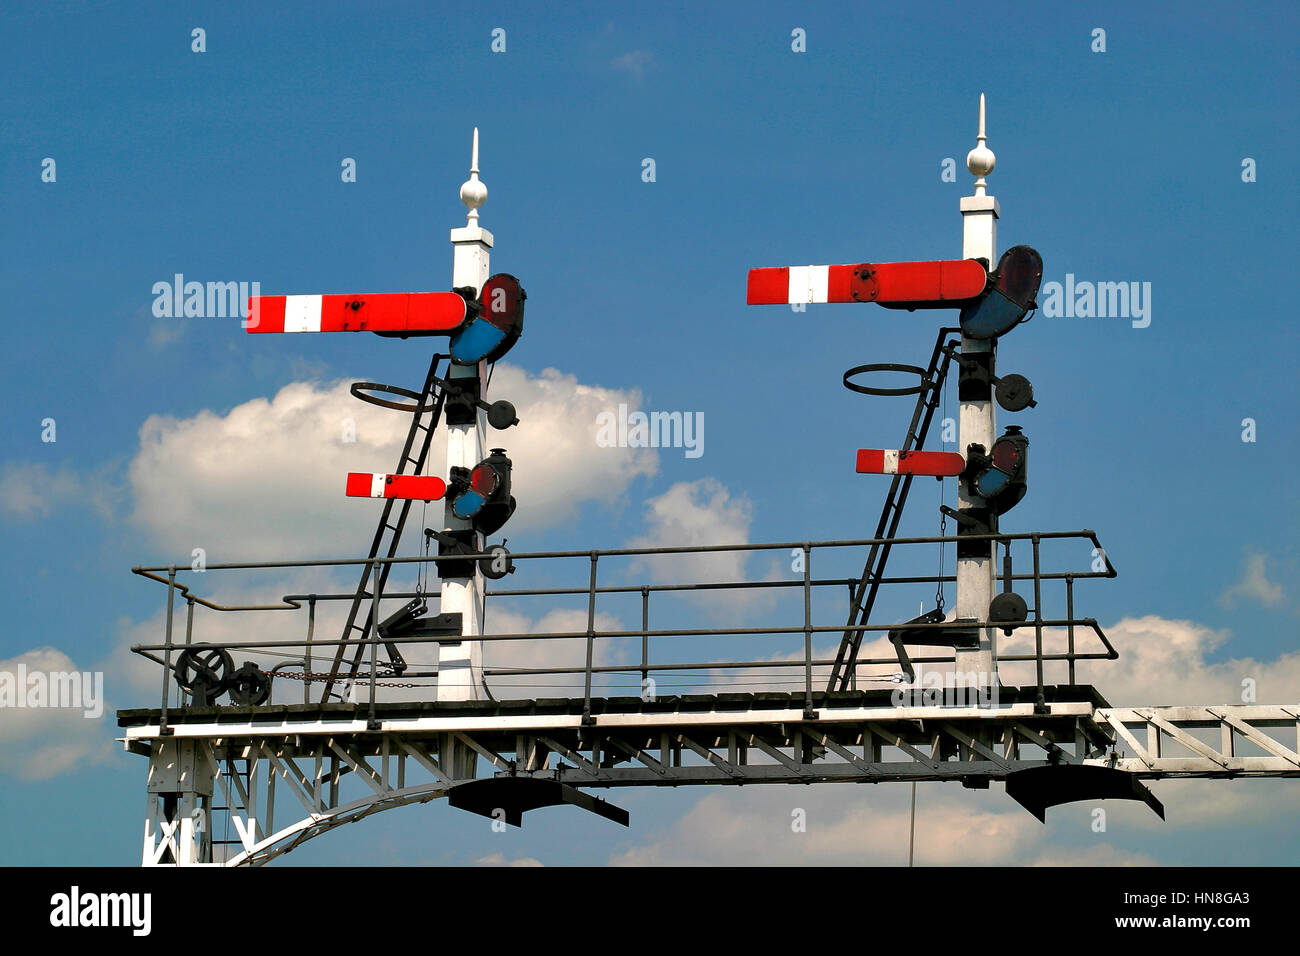 British Railway semaphore signals, Stock Photo